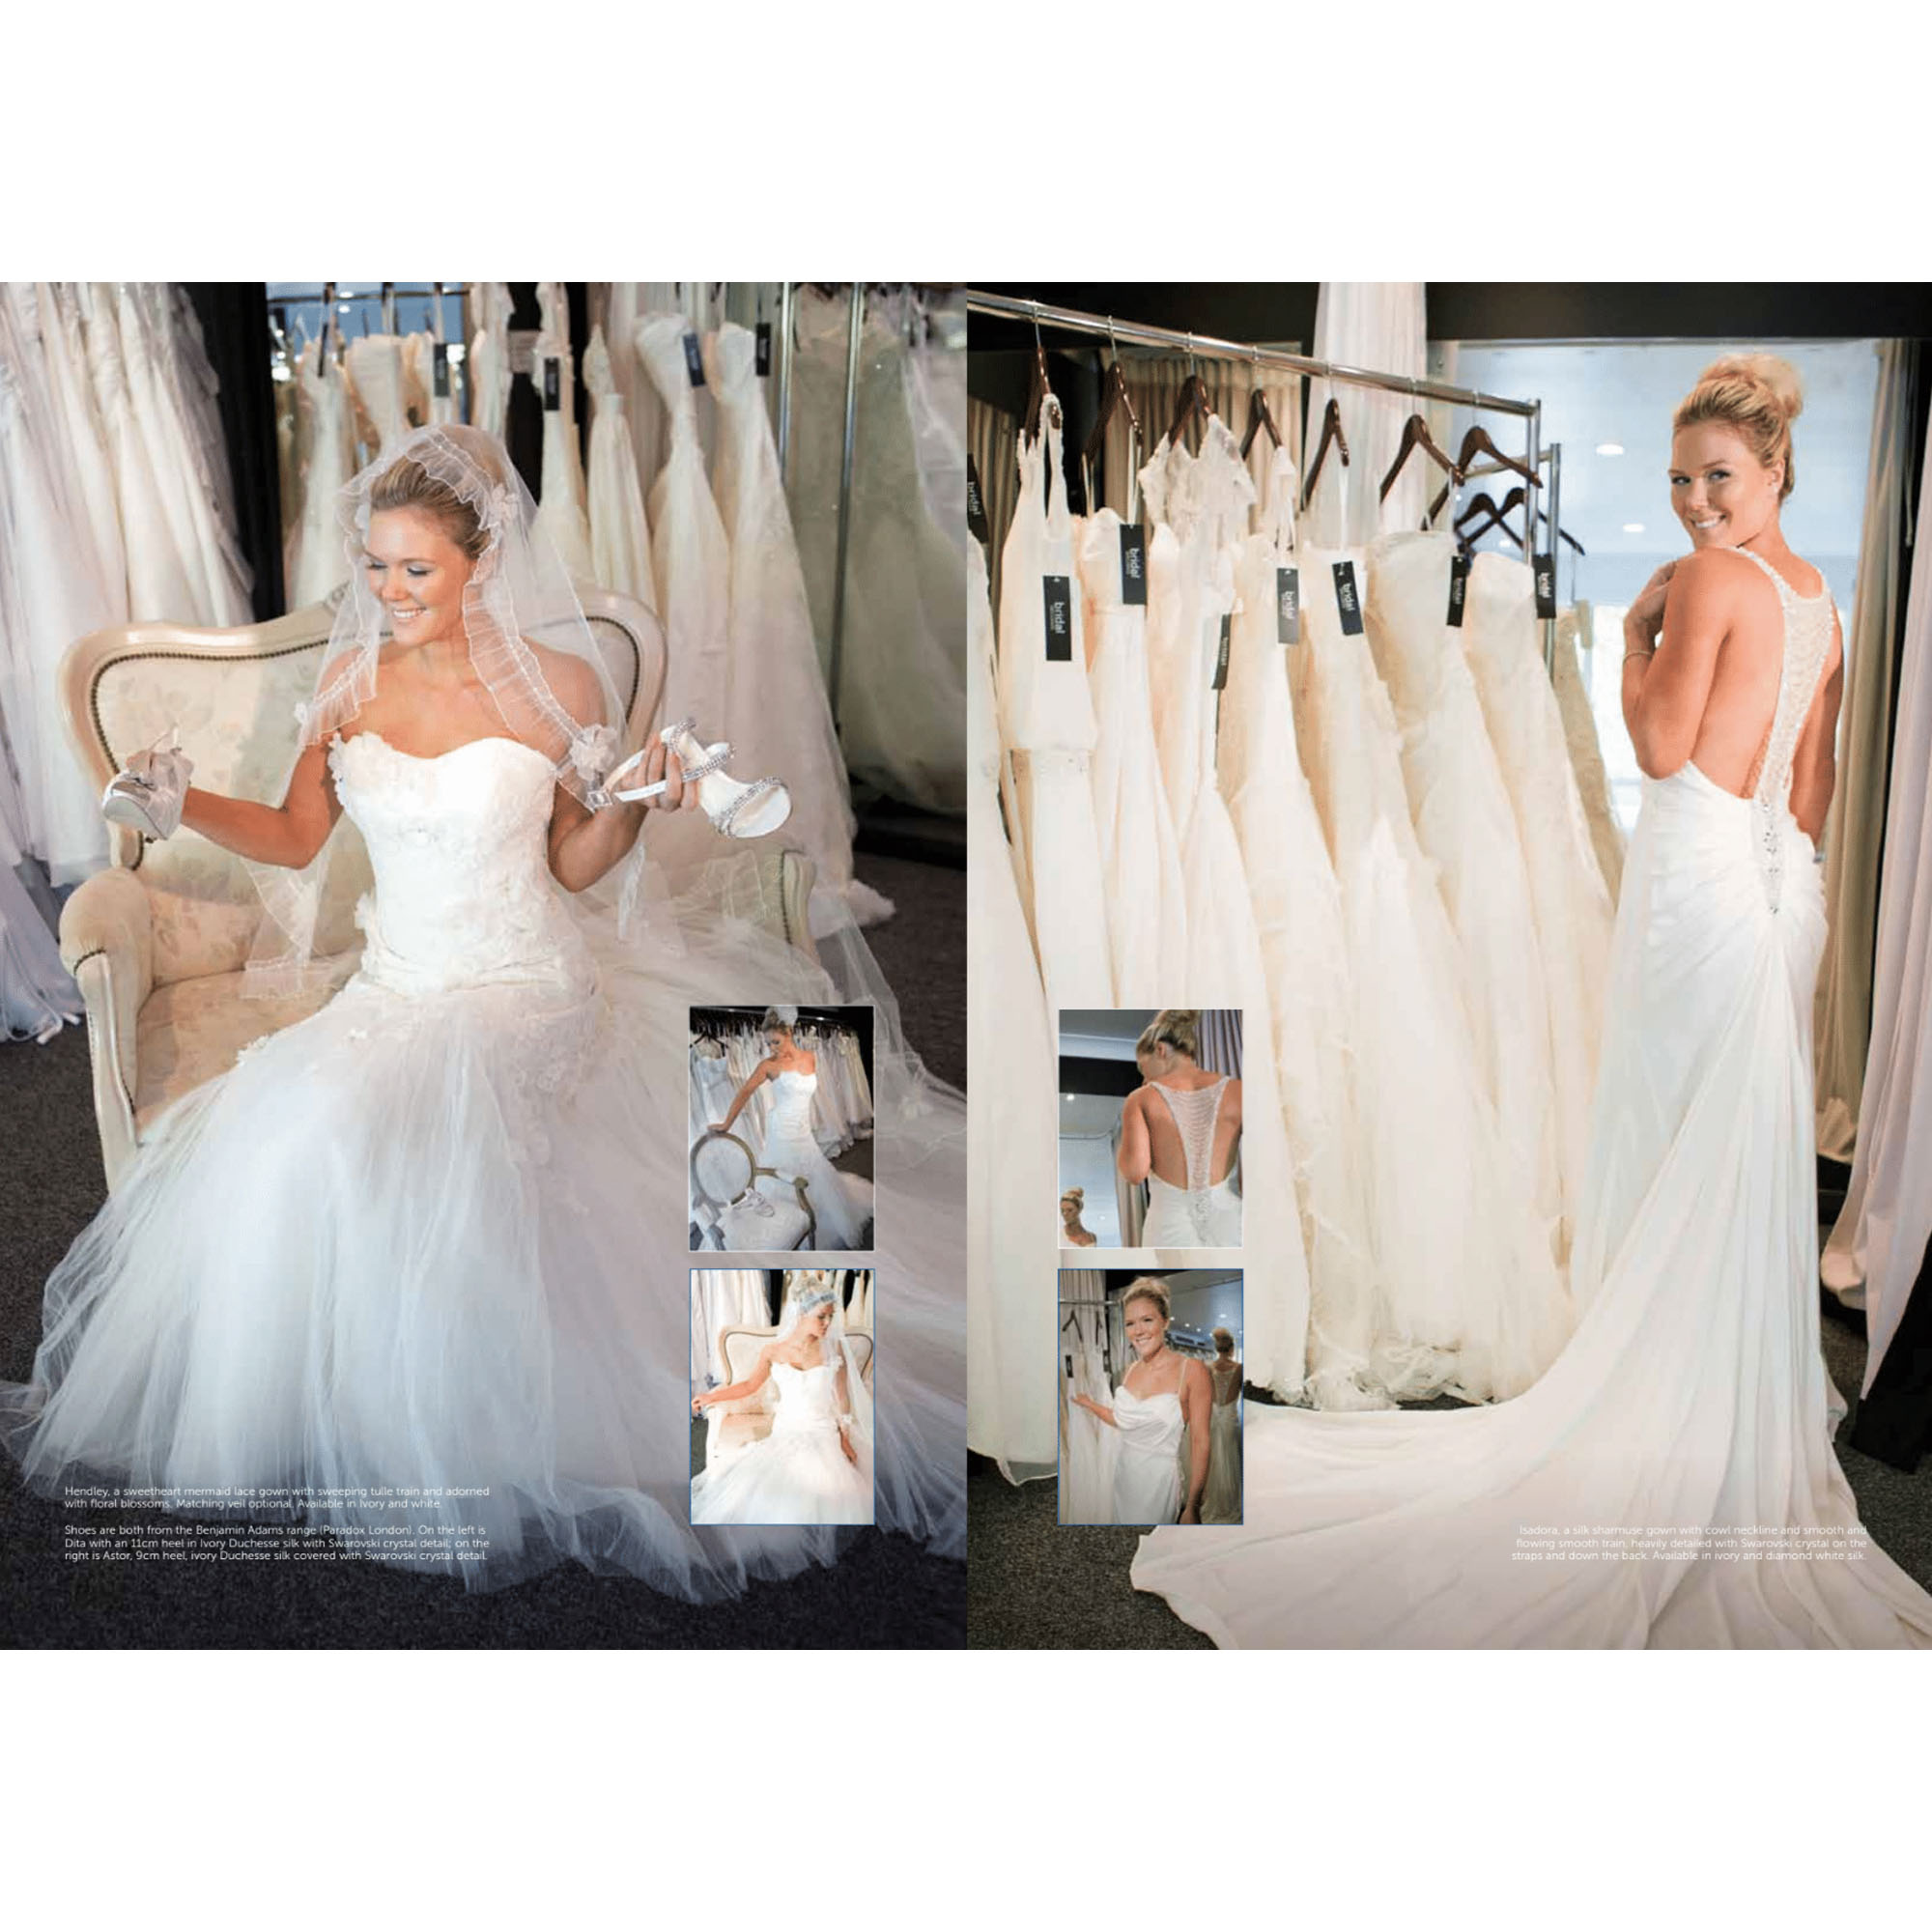 Bridal Store Photoshoot